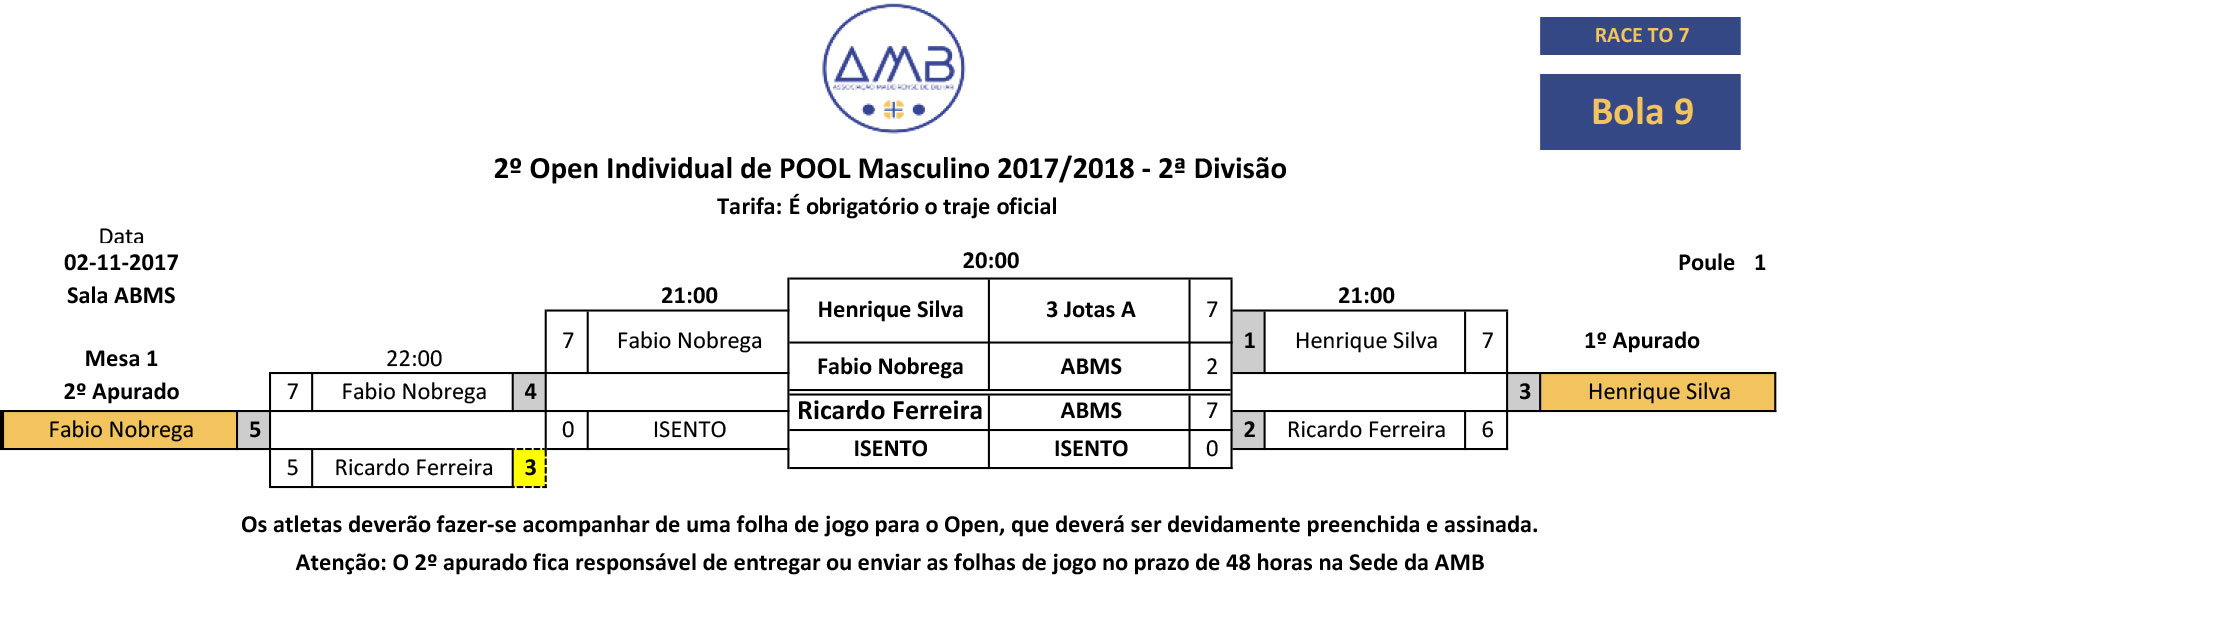 2º Open Individual de POOL MASCULINO 2017-2018 - 2ª DivisÃo 1 fase